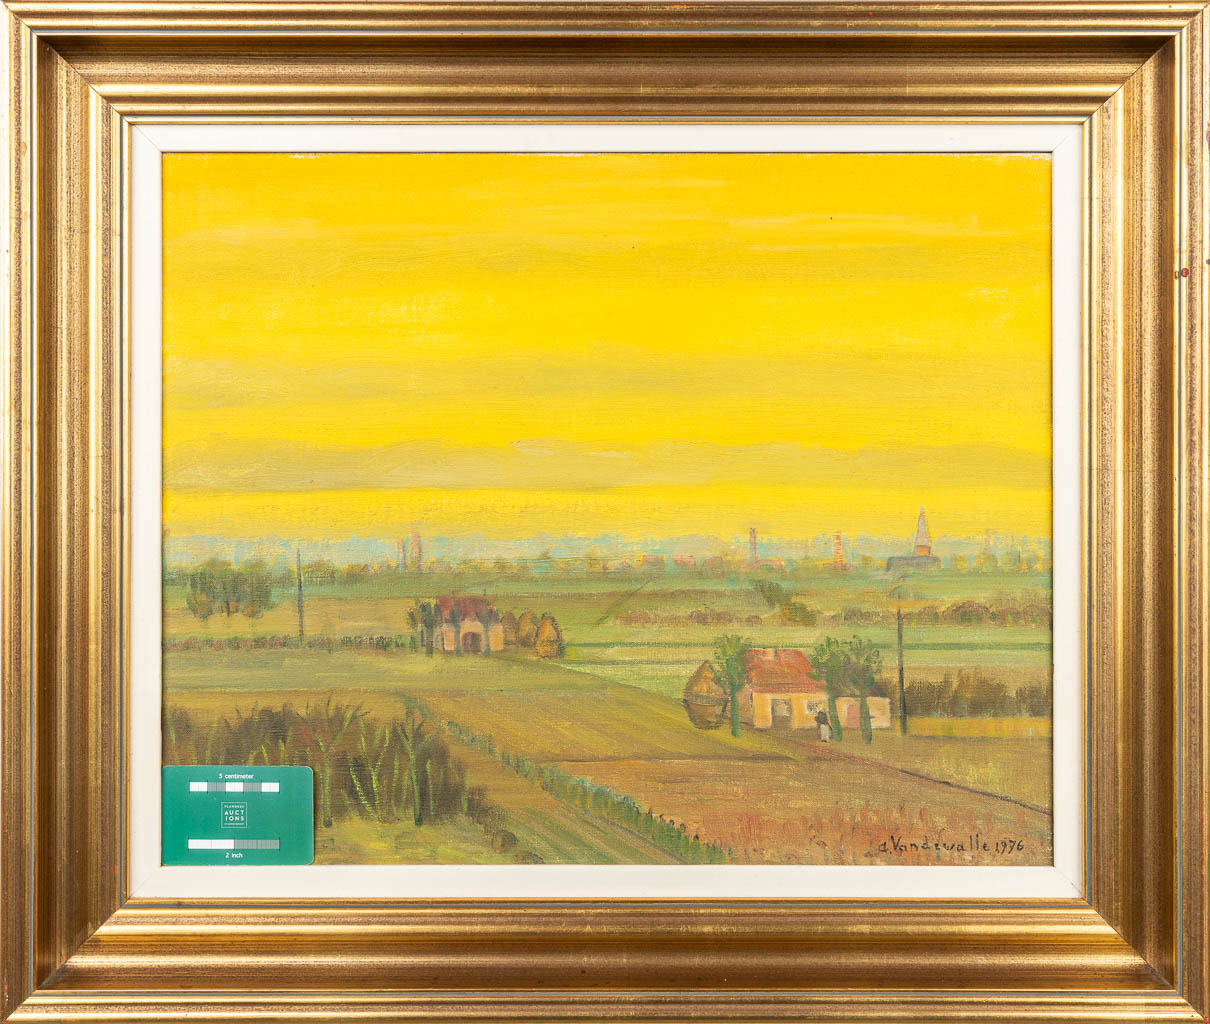 Adriaan VANDEWALLE (1907-1997) 'Polderlandschap' a painting, oil on canvas. (50 x 40 cm)